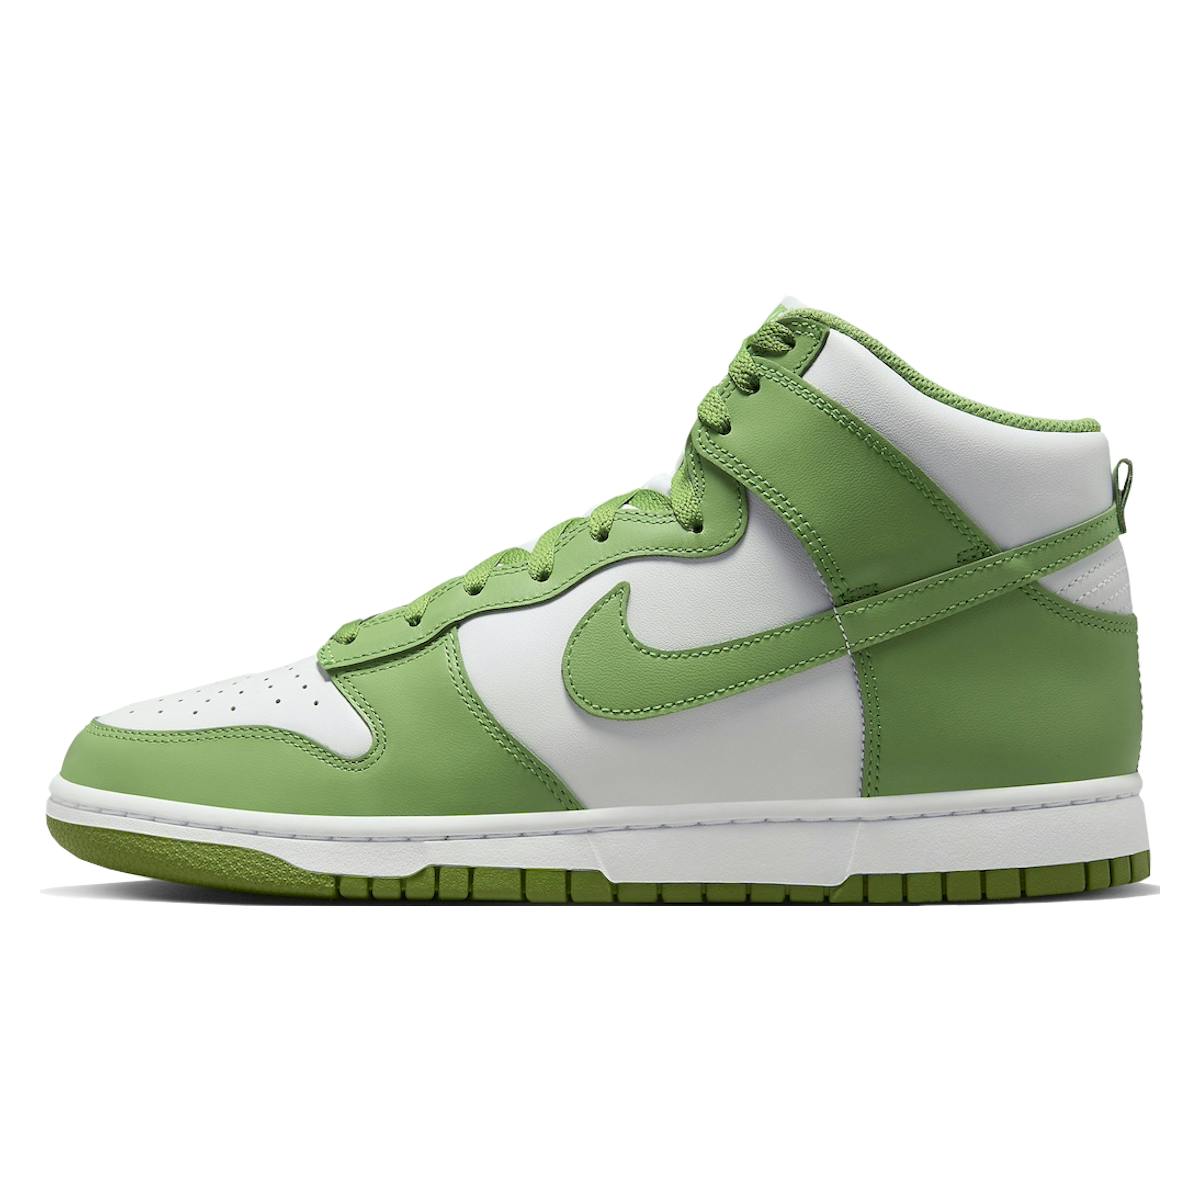 Nike Dunk High Retro "Chlorophyll"